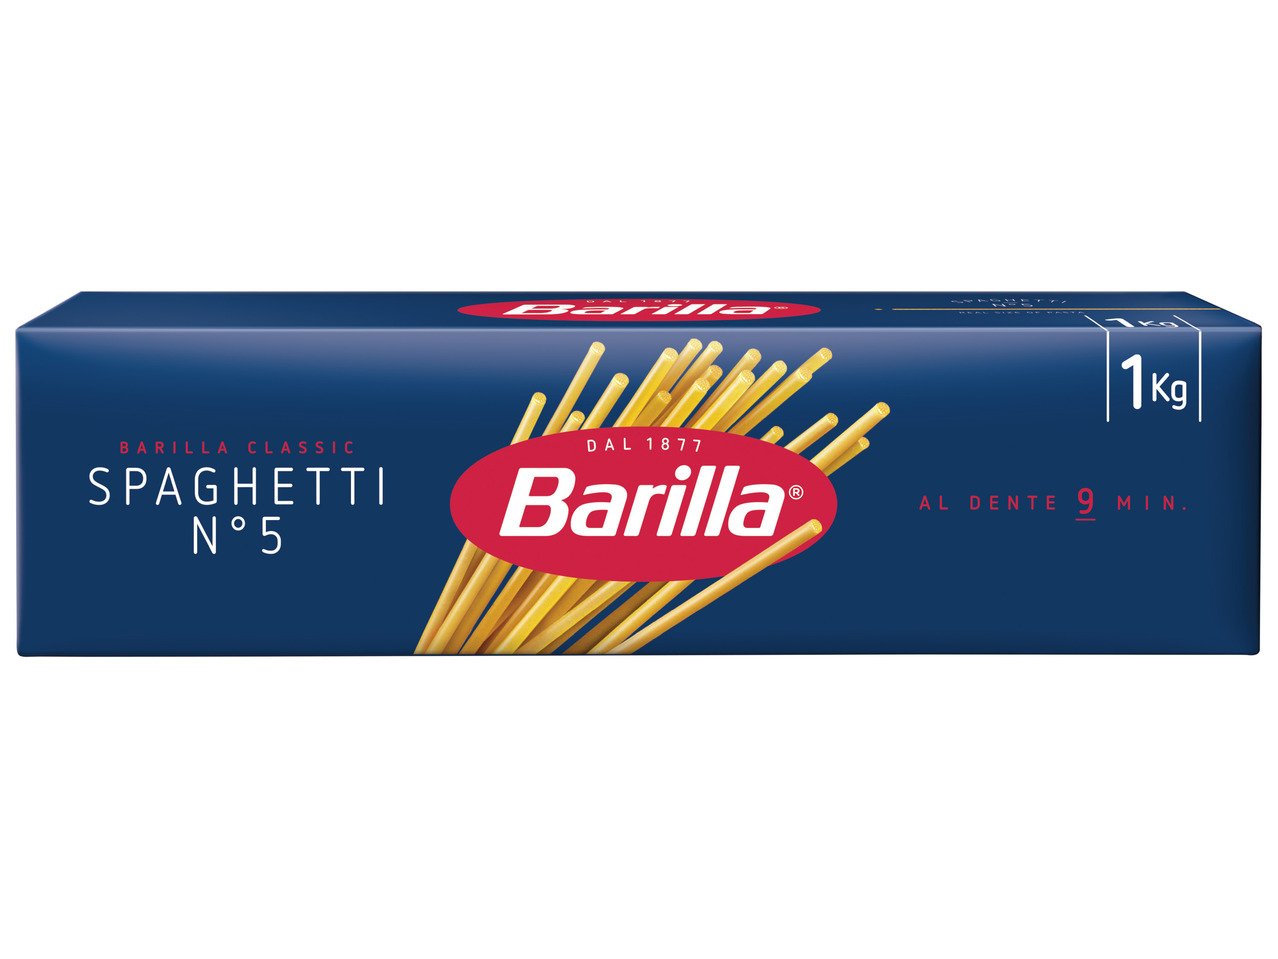 Barilla Пене ригате или спагети